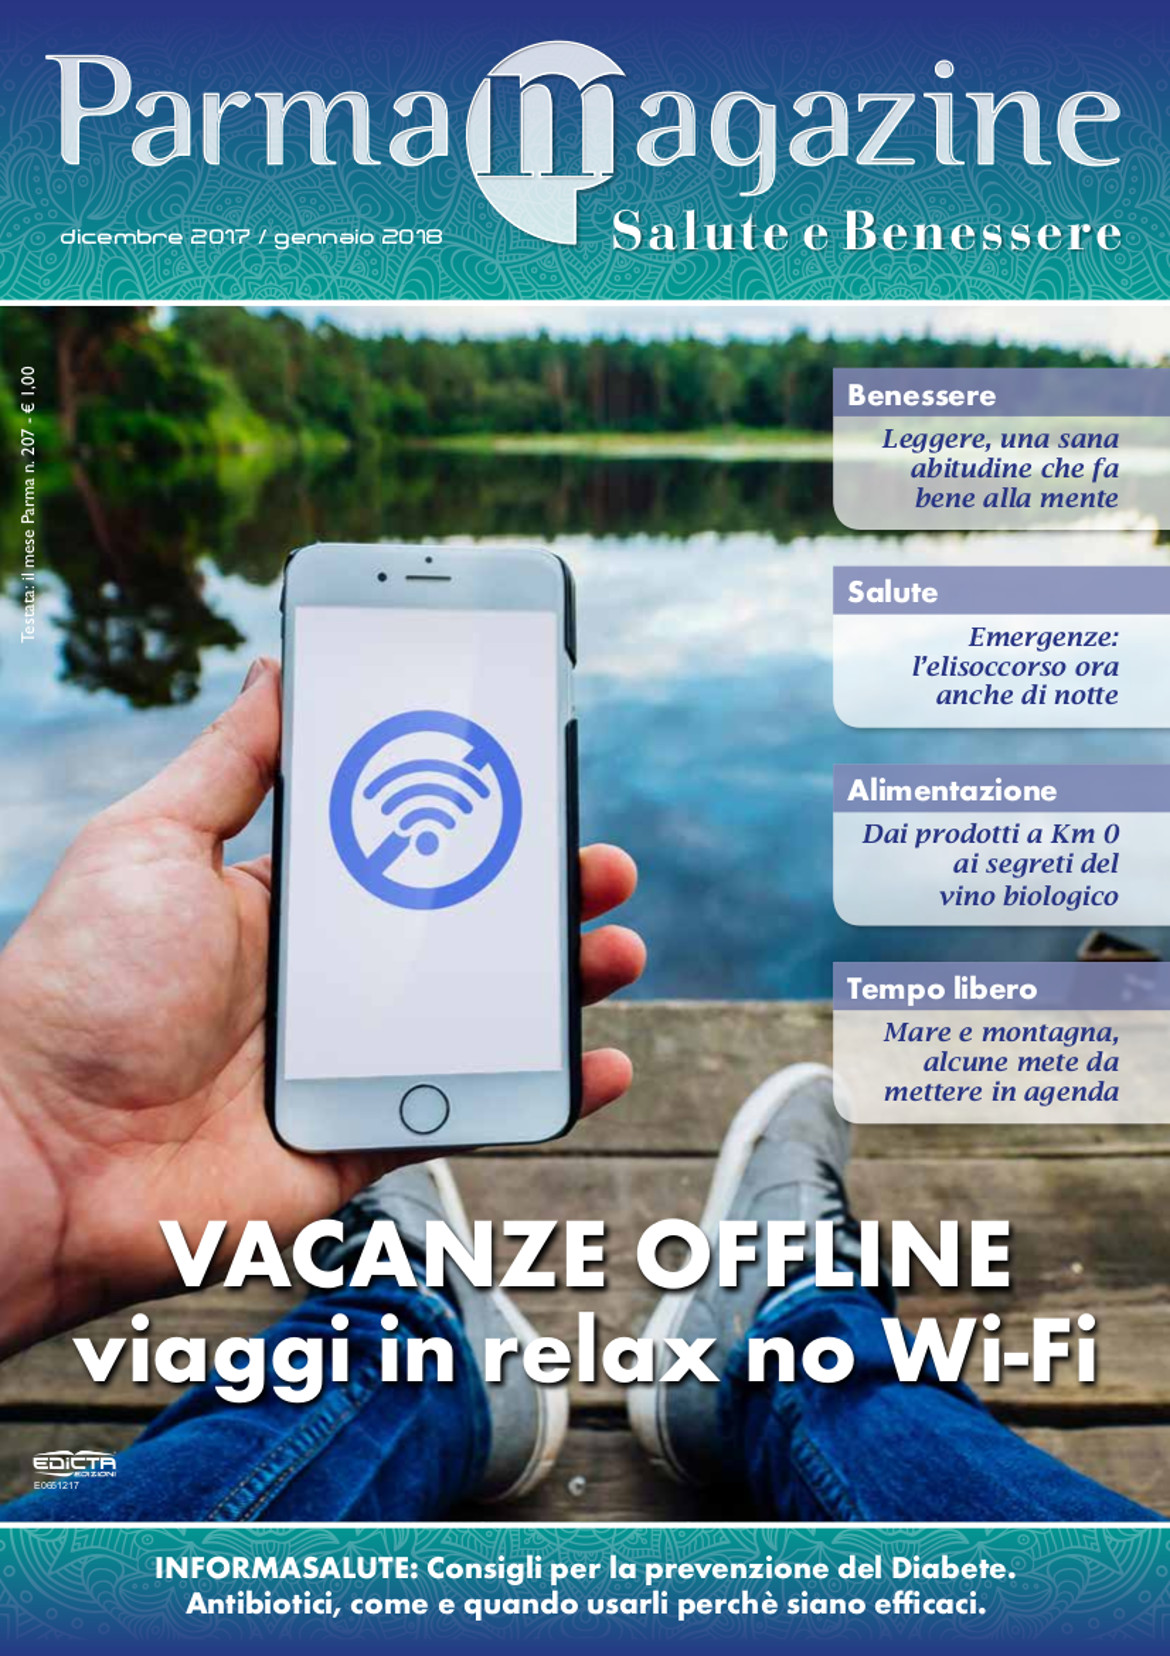 Copertina di Parma Magazine dedicato alle Vacanze offline e al Digital Detox